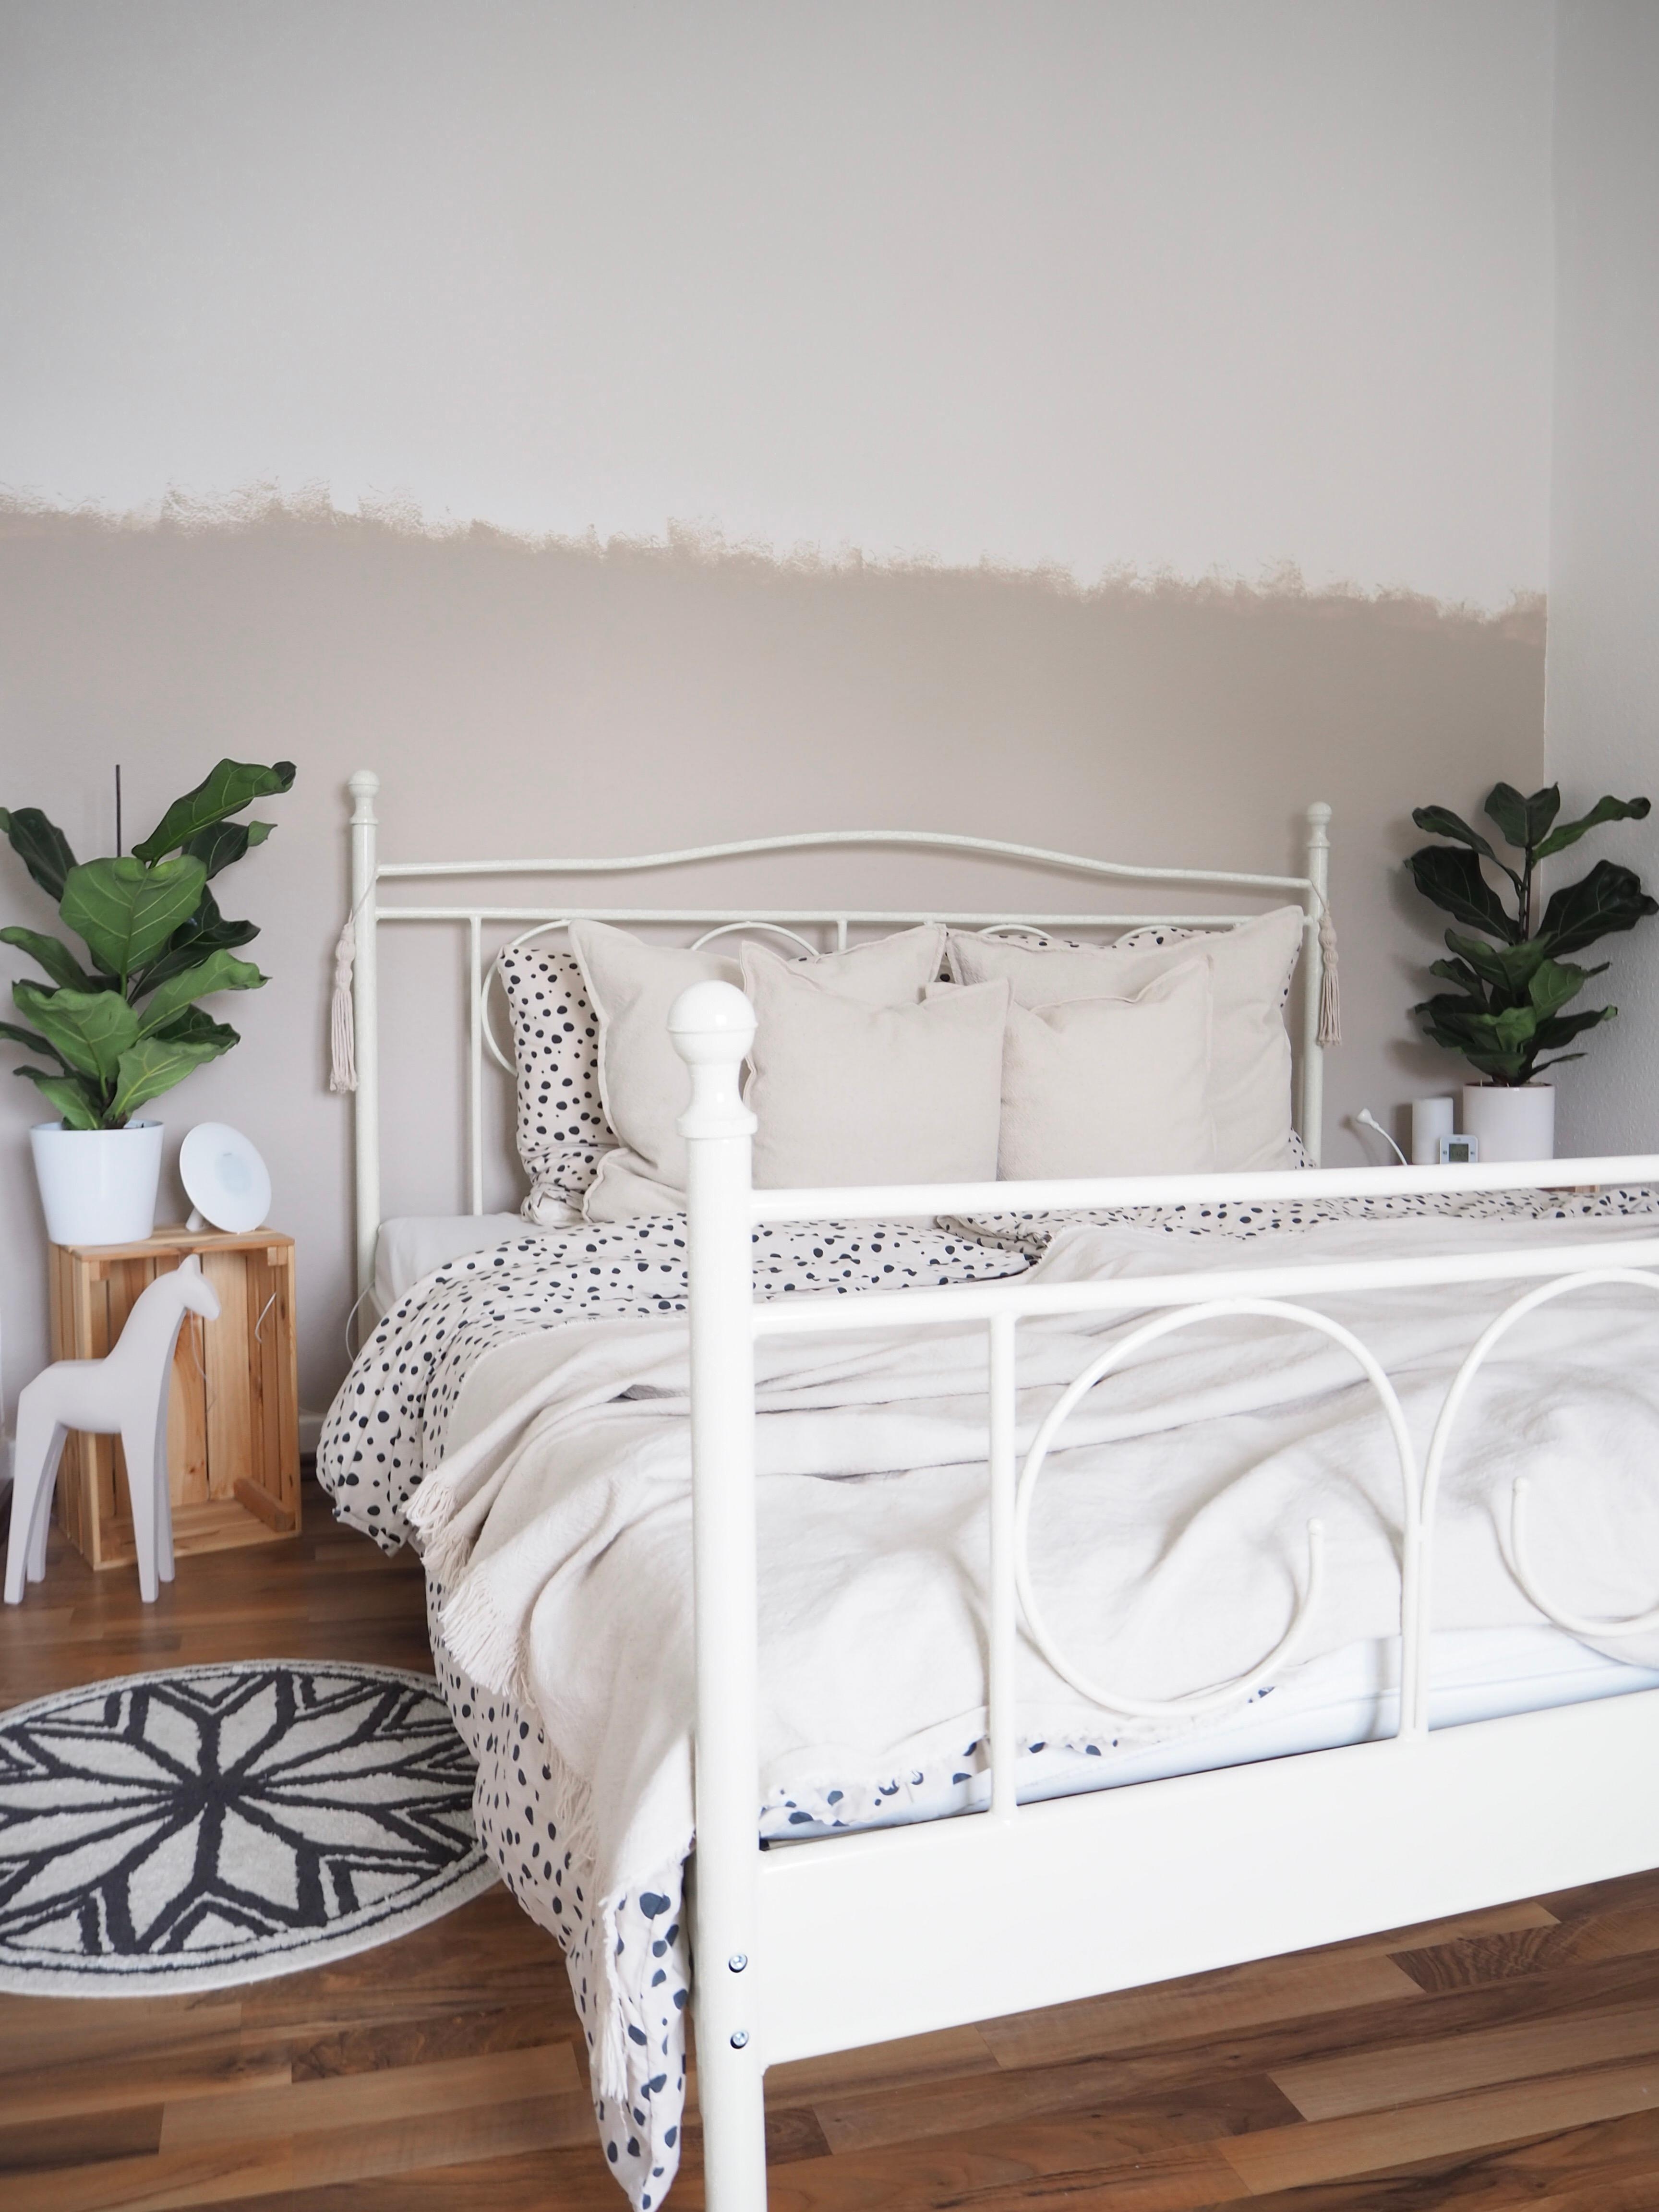 Undine Wall Look im Schlafzimmer 
#undonelook #wandfarbe #pflanzenliebe #schönerwohnenfarbe